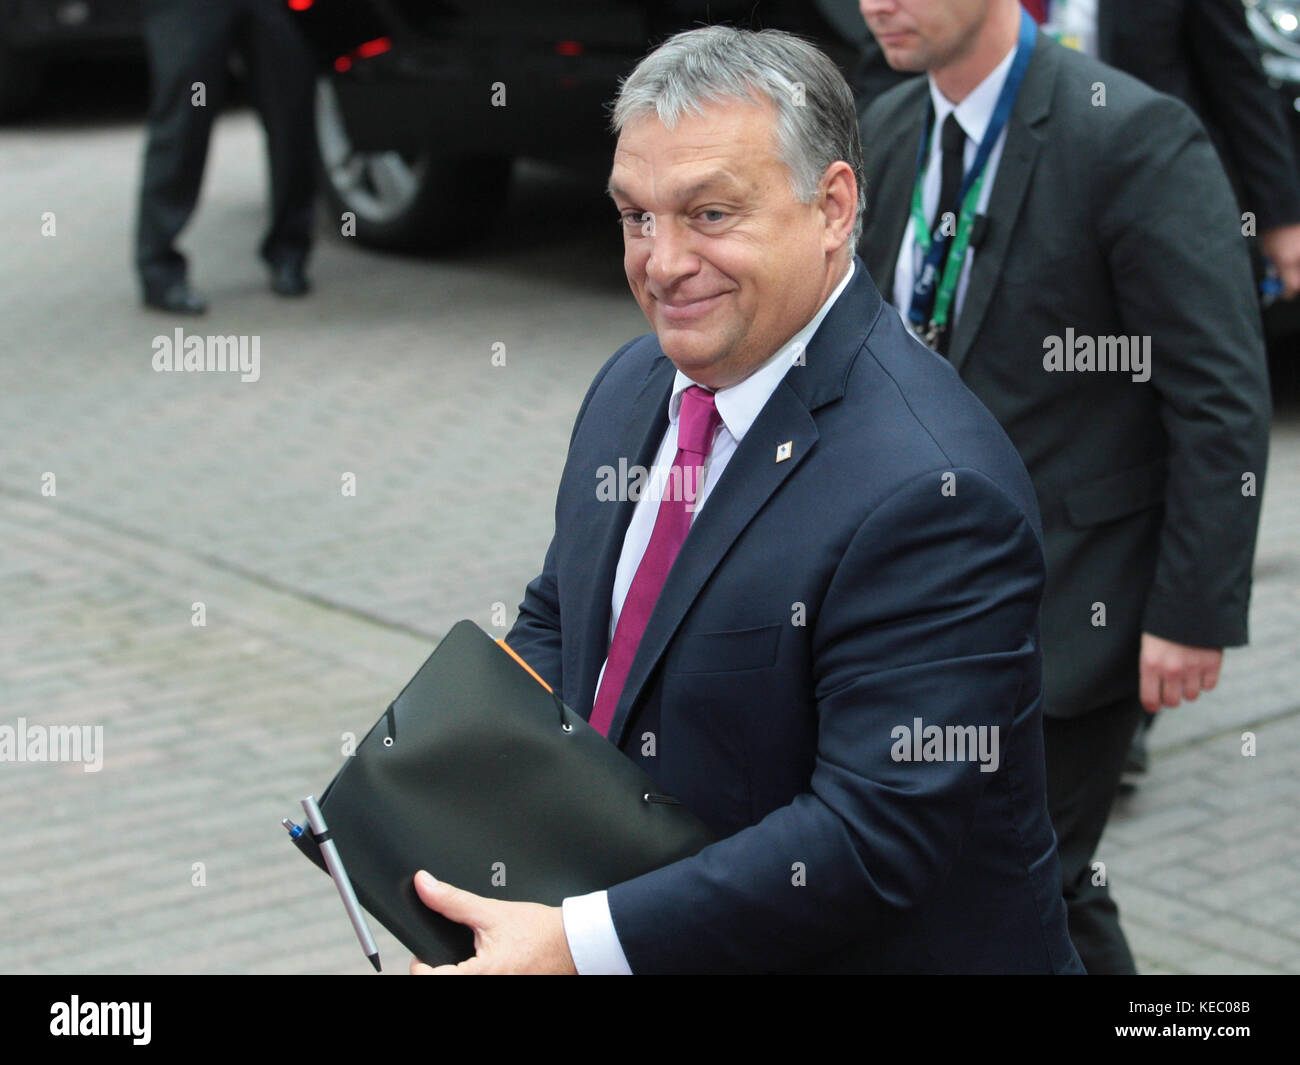 Bruselas, Bélgica. 19 oct, 2017. Víctor Orban, Primer Ministro de Hungría en el Consejo Europeo. Crédito: leo cavallo/alamy live news Foto de stock